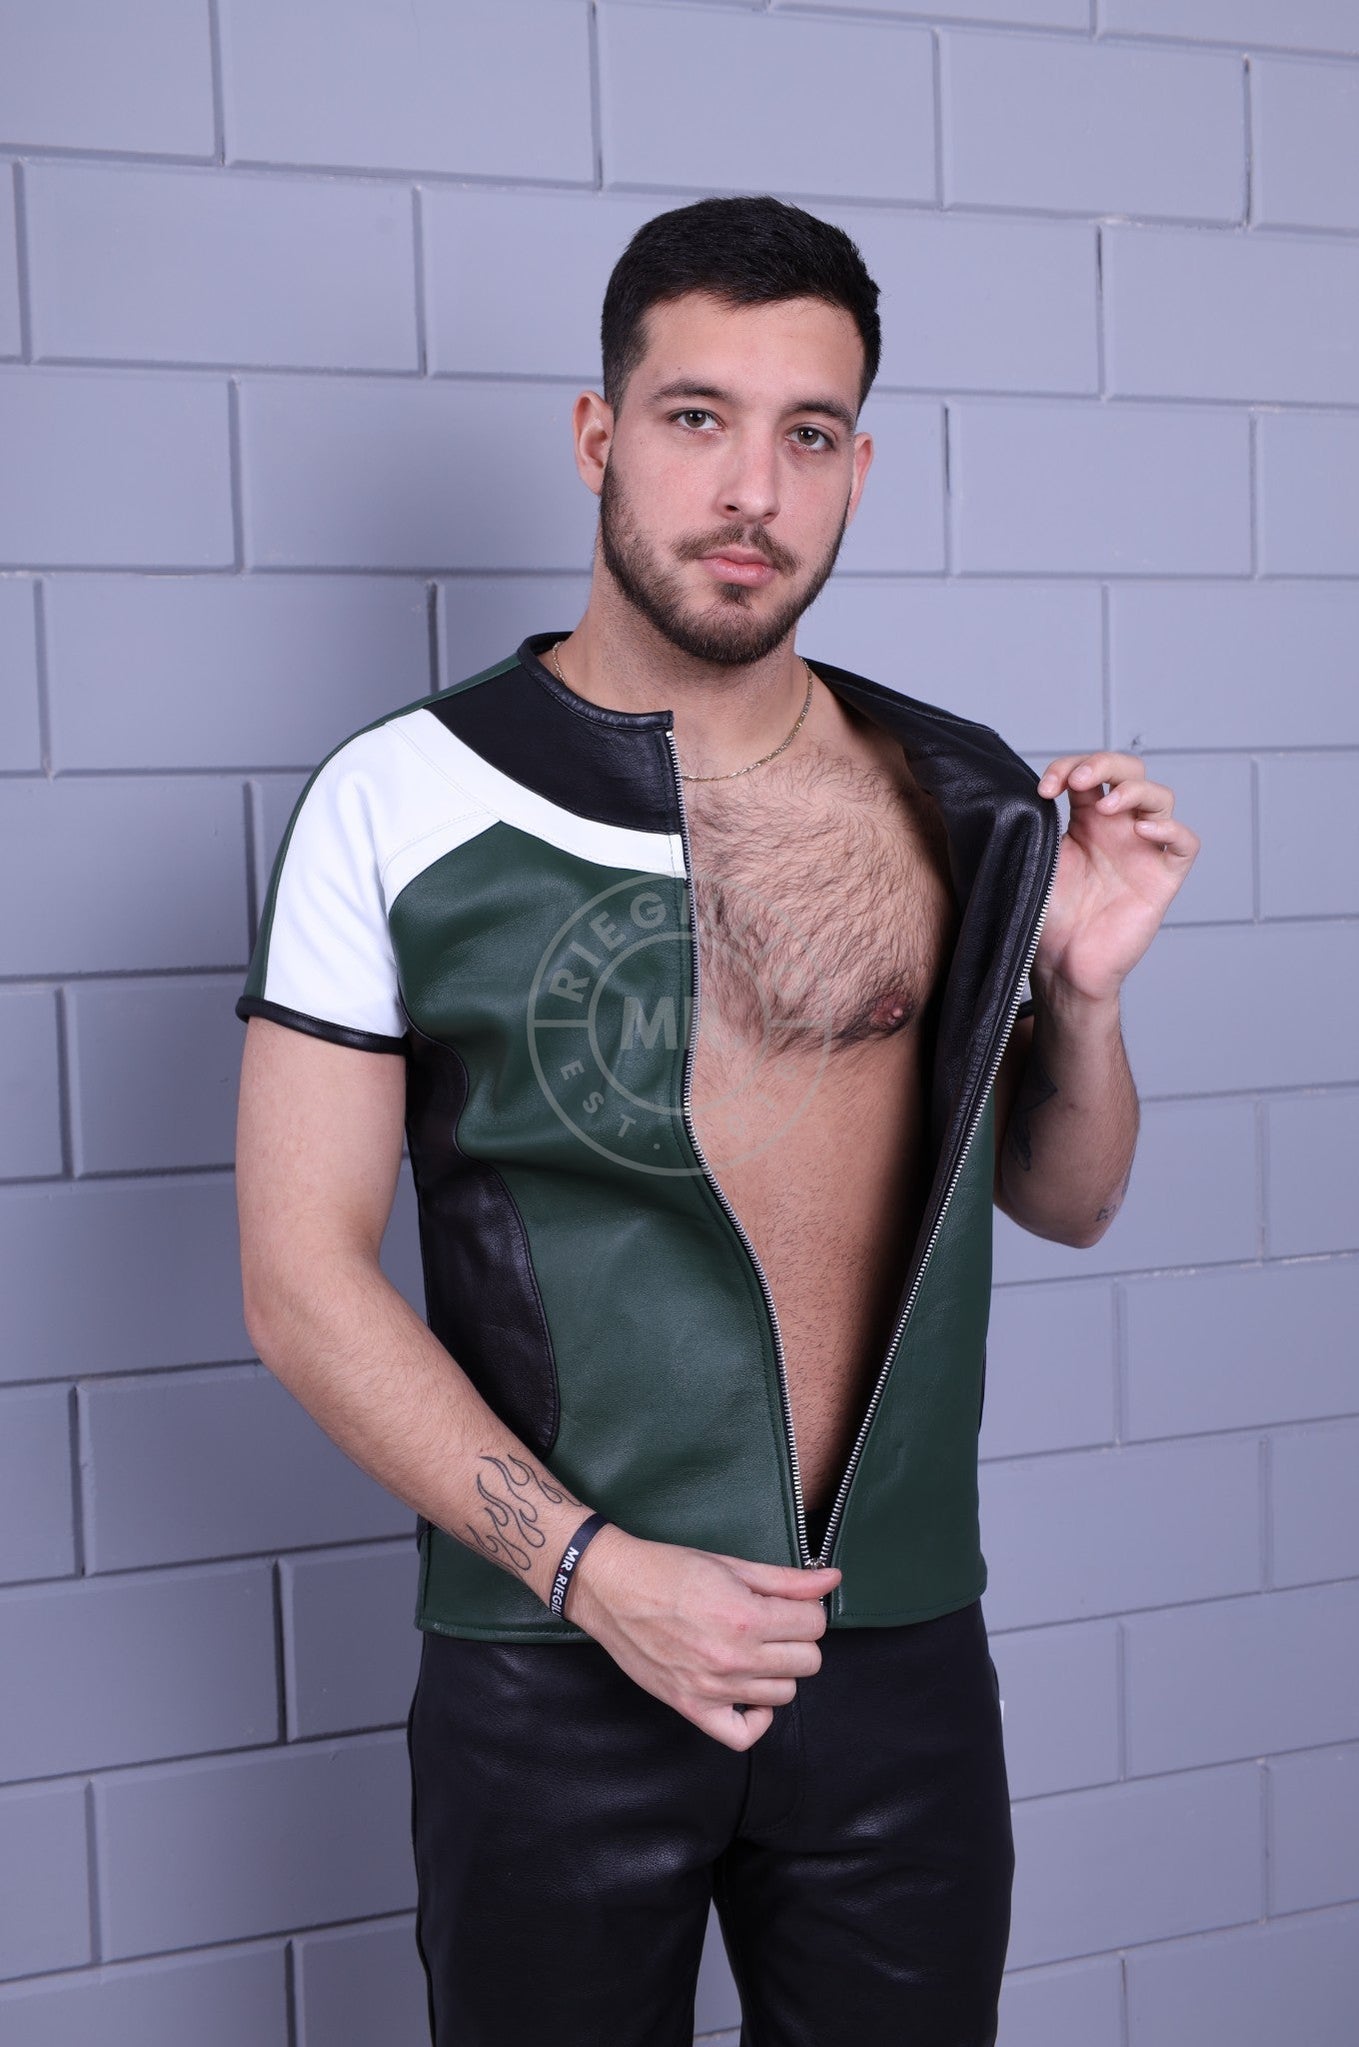 Leather Biker Shirt - Dark Green at MR. Riegillio